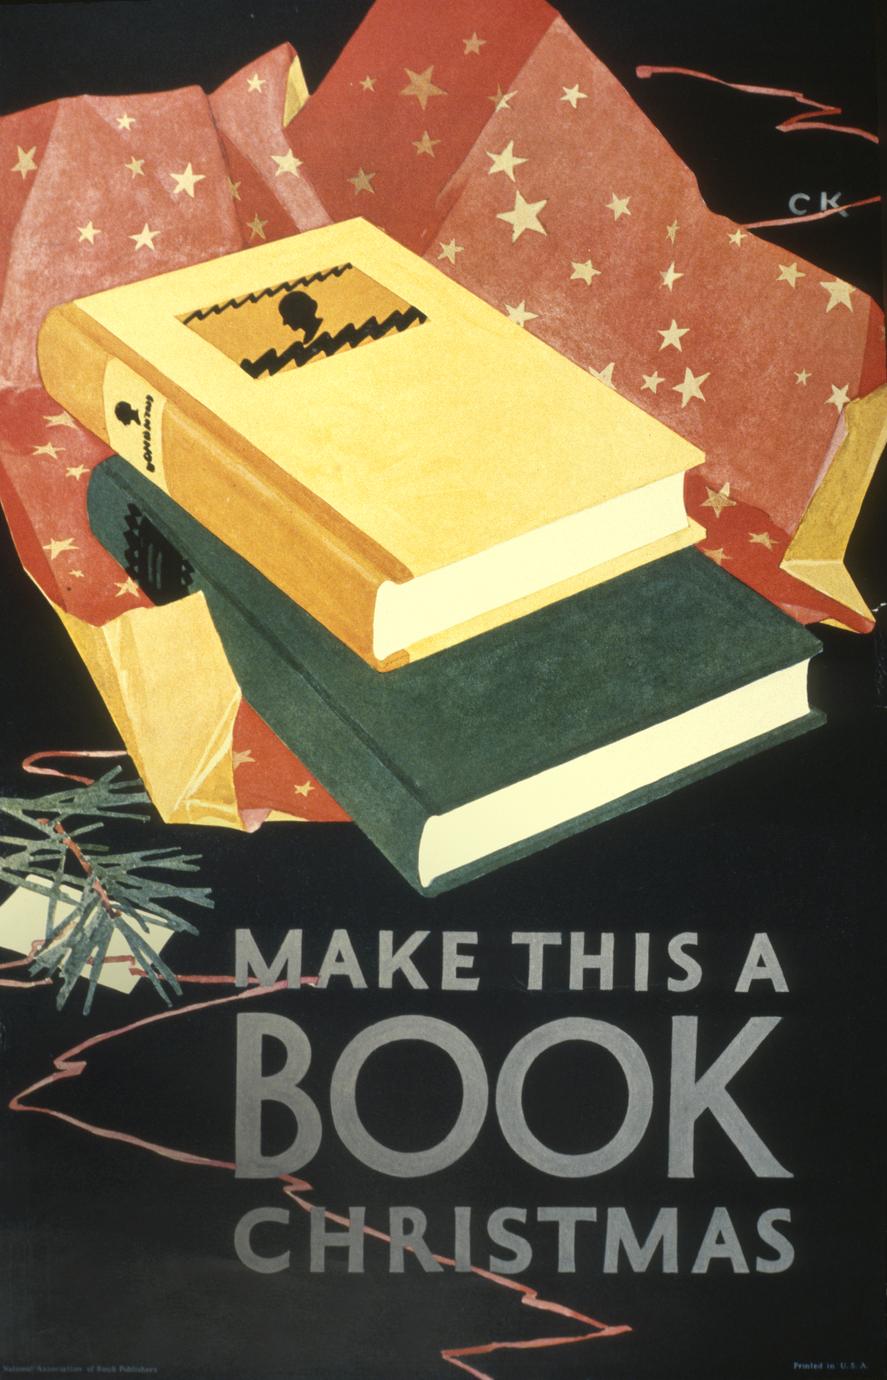 Make this a book Christmas